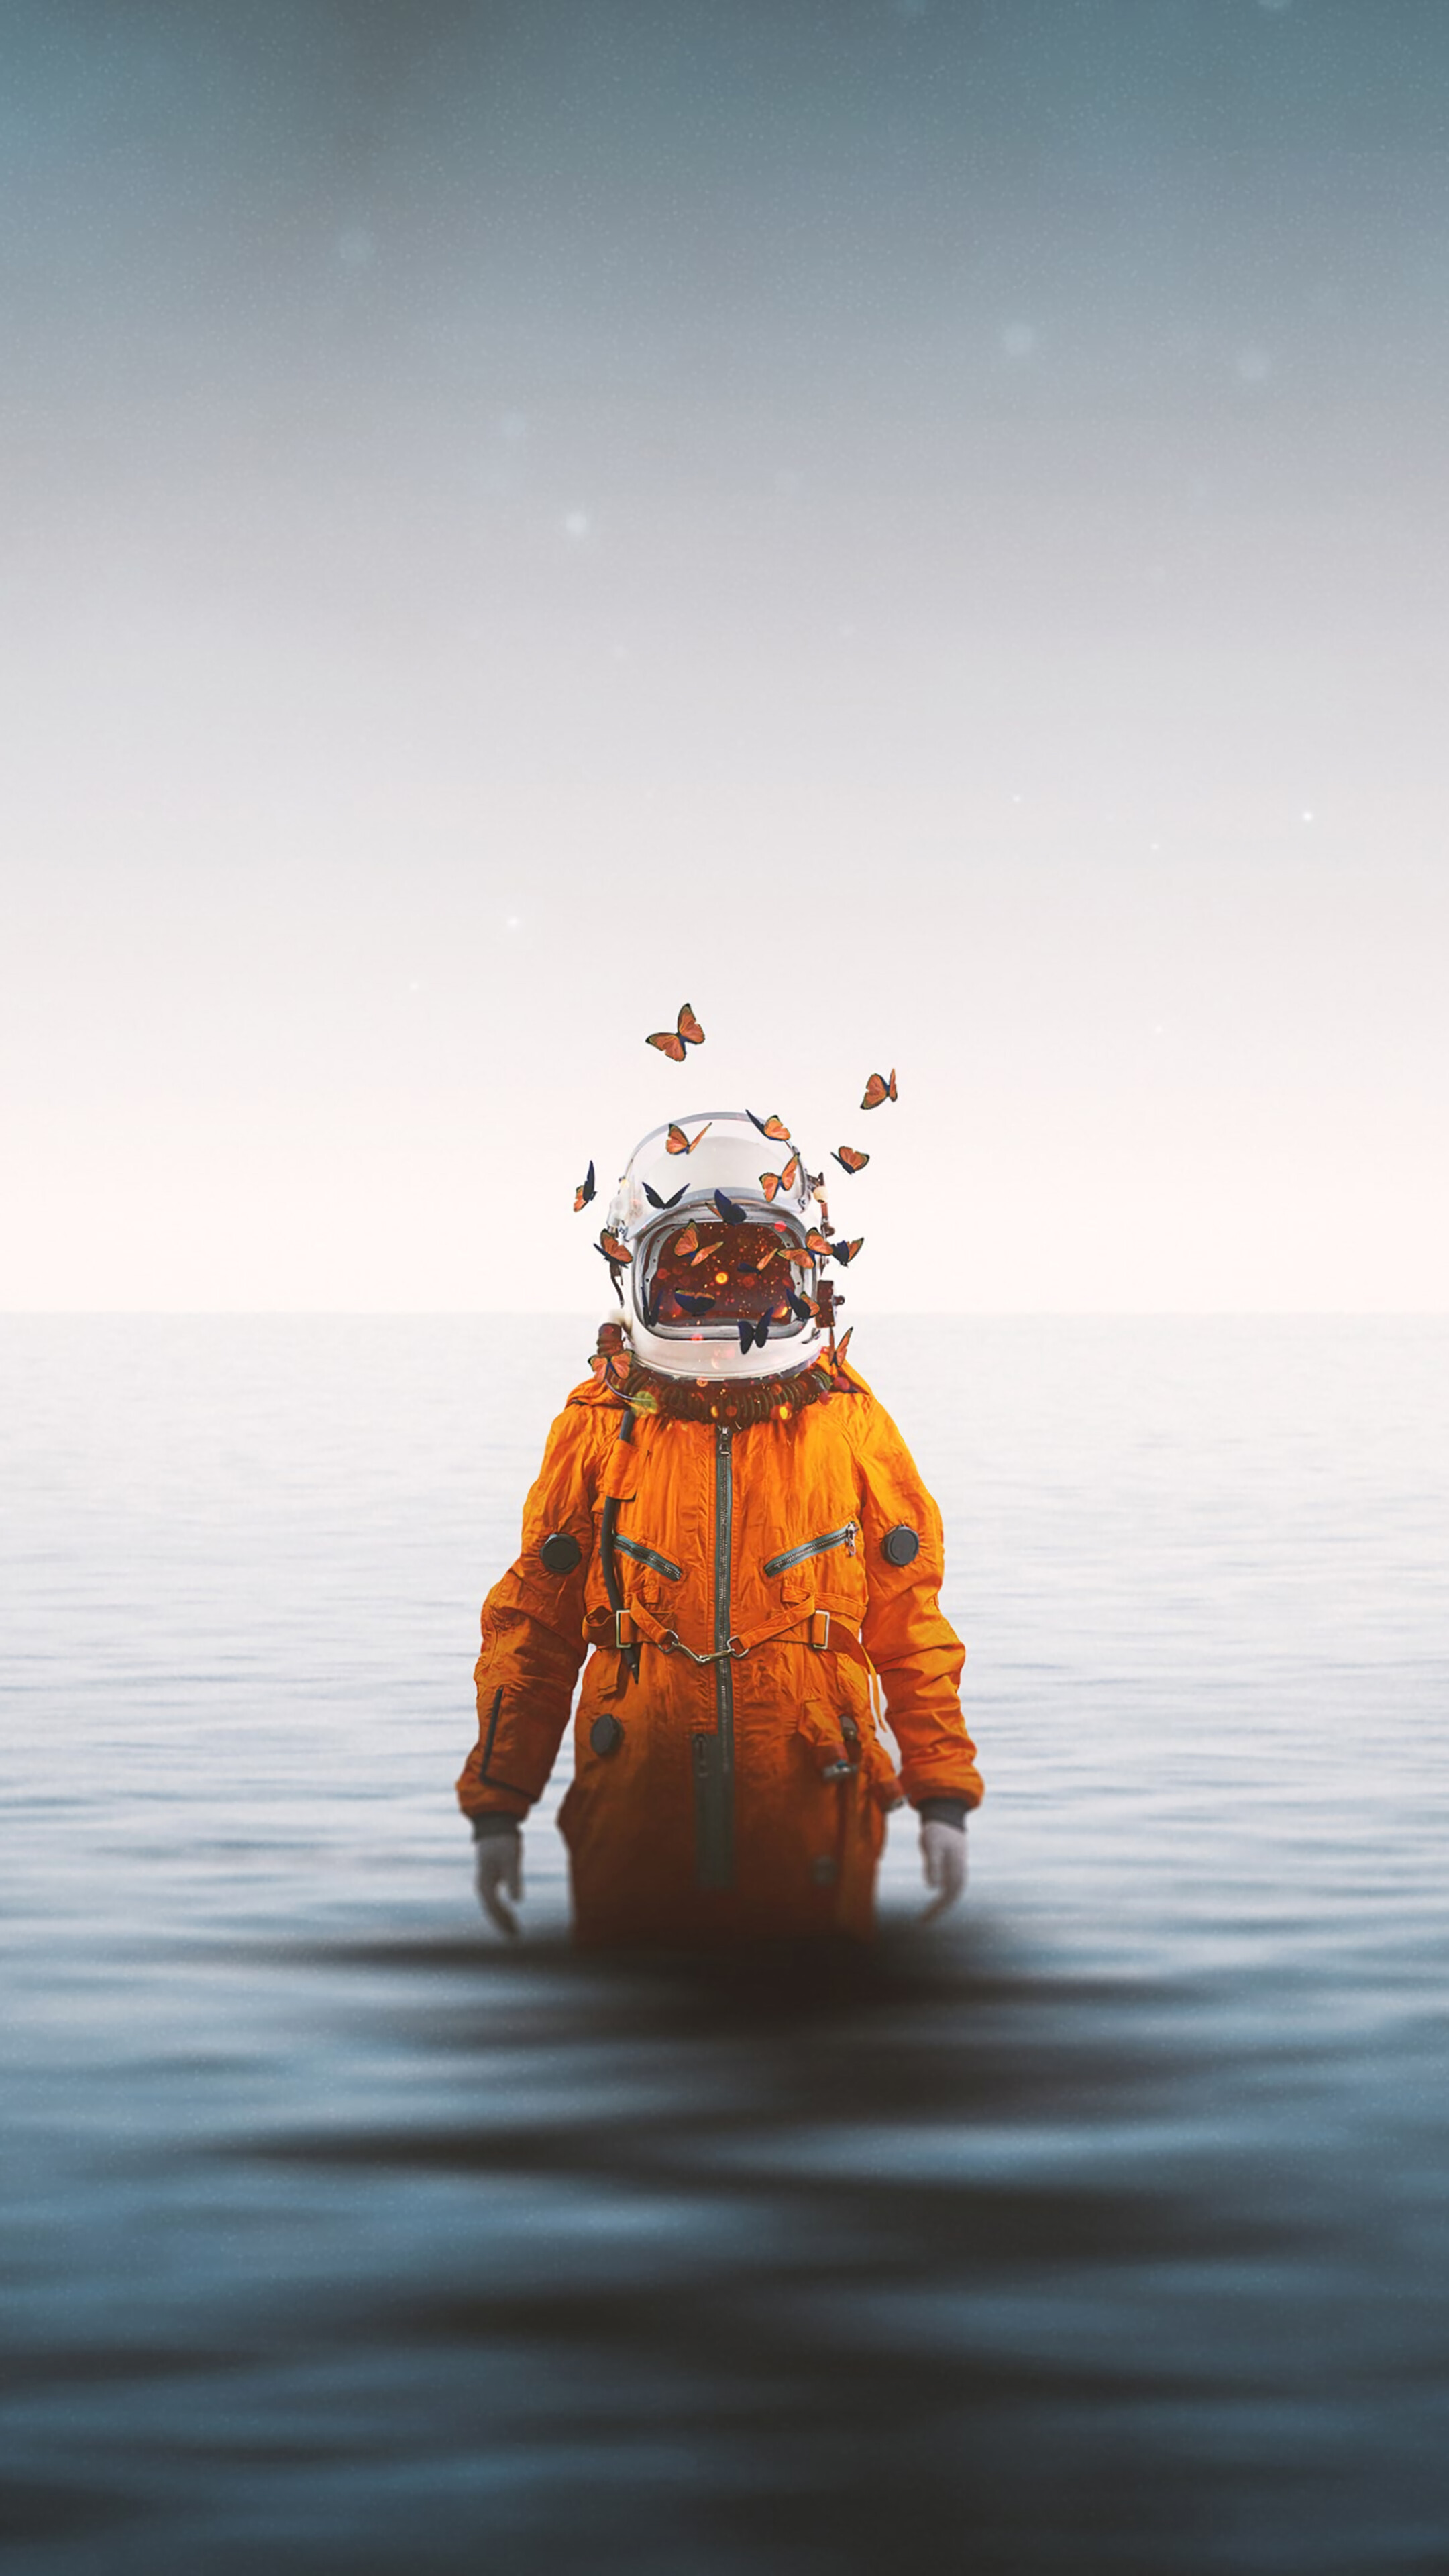 عکس مفهومی بسیار زیبا با طرح فضانورد و پروانه های نارنجی درون آب دریا